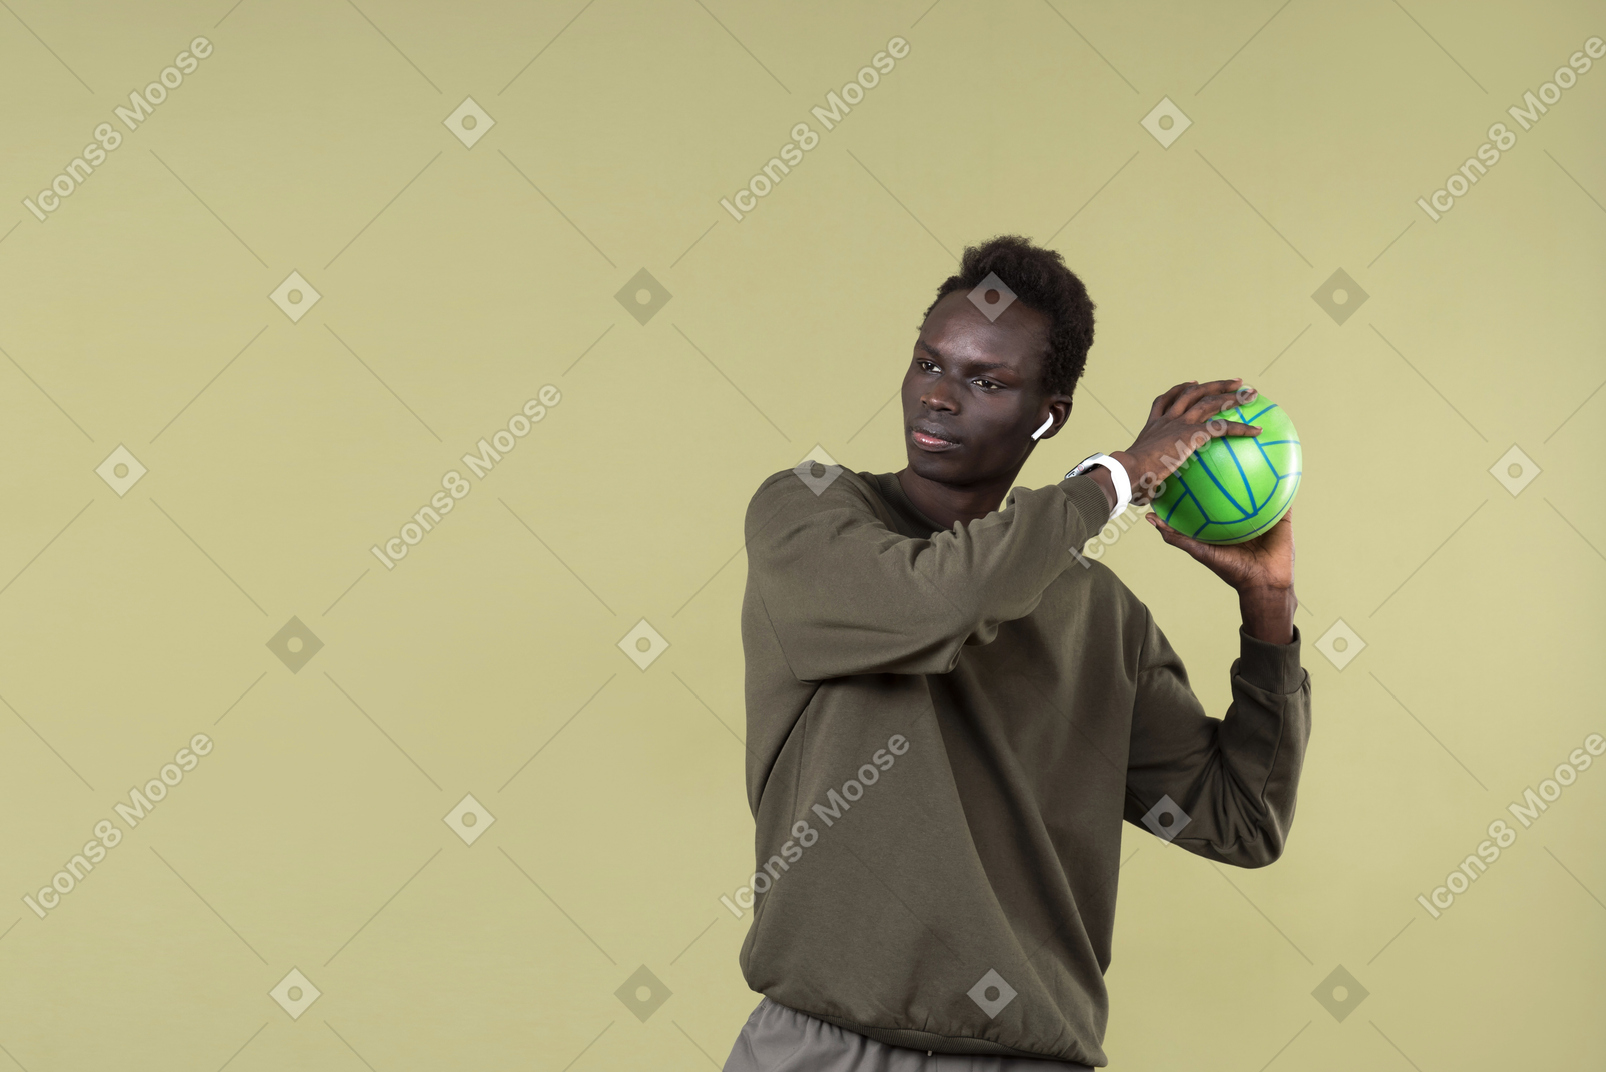 Jeune homme noir portant des vêtements décontractés, avec airpod et smartwatch en train de s'entraîner